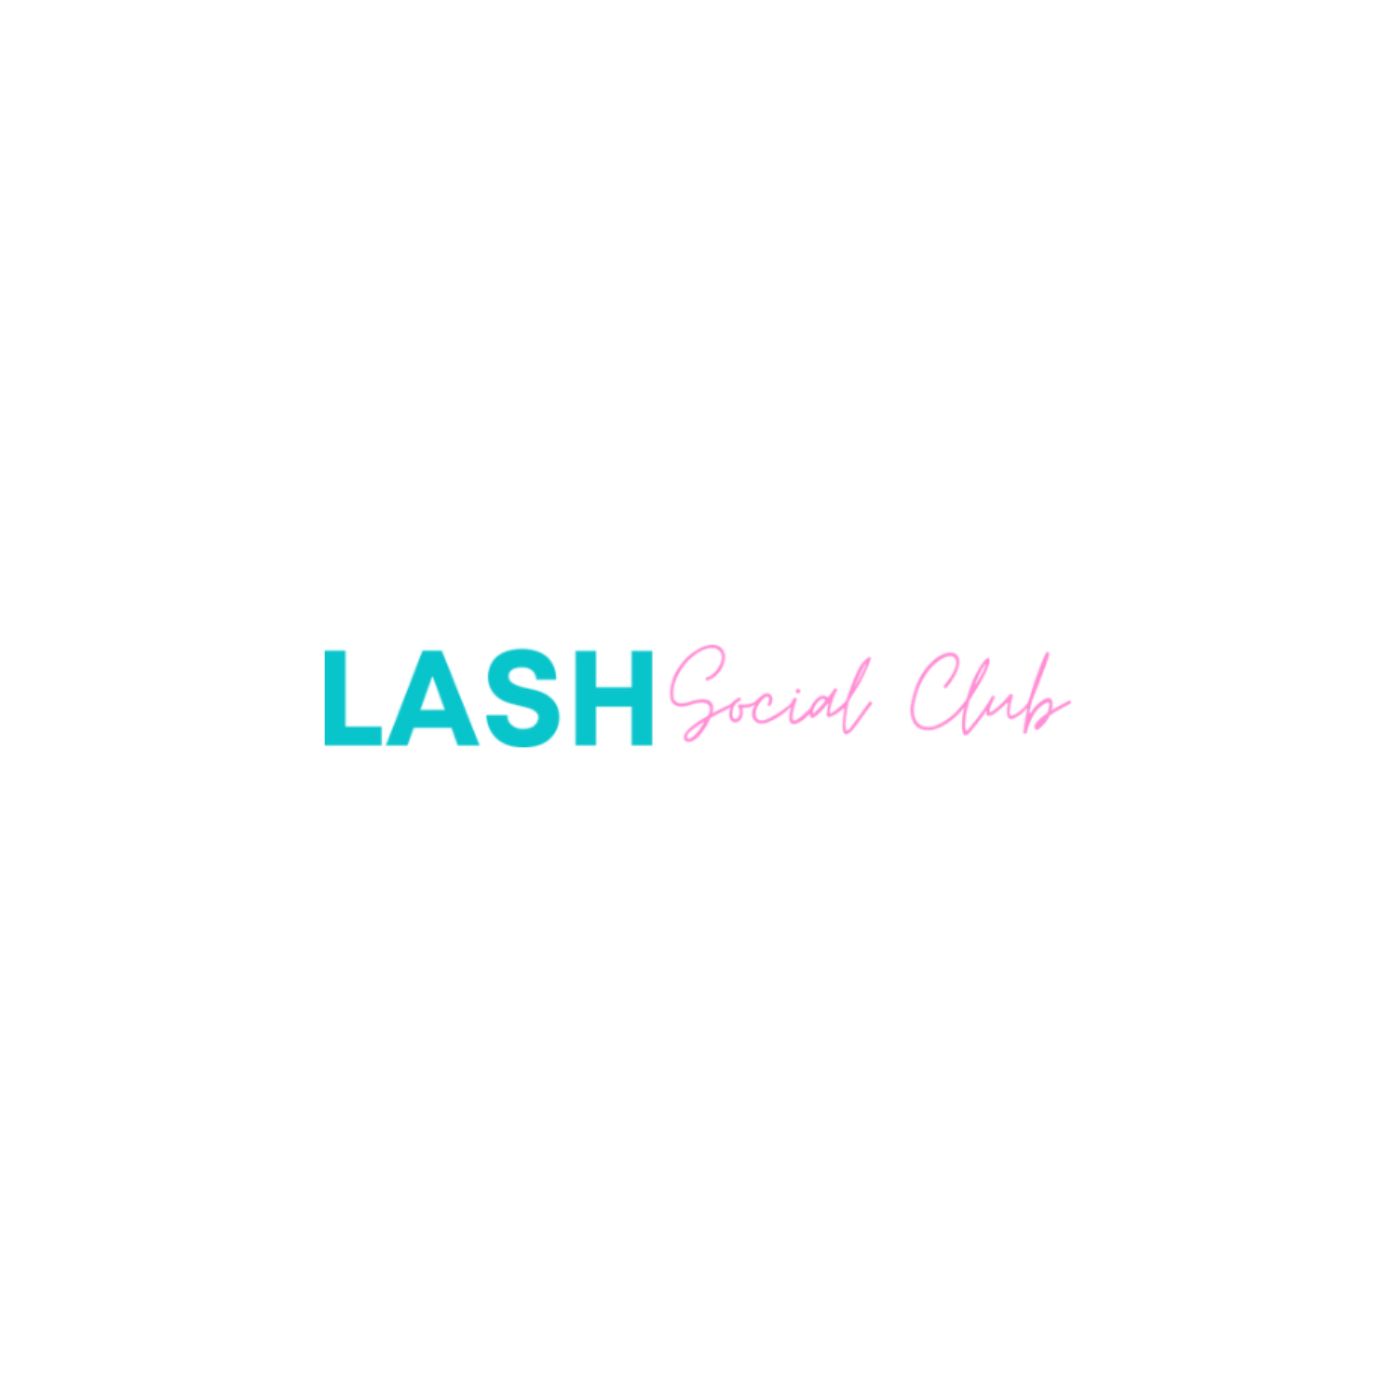 Lash Social Club Inc.